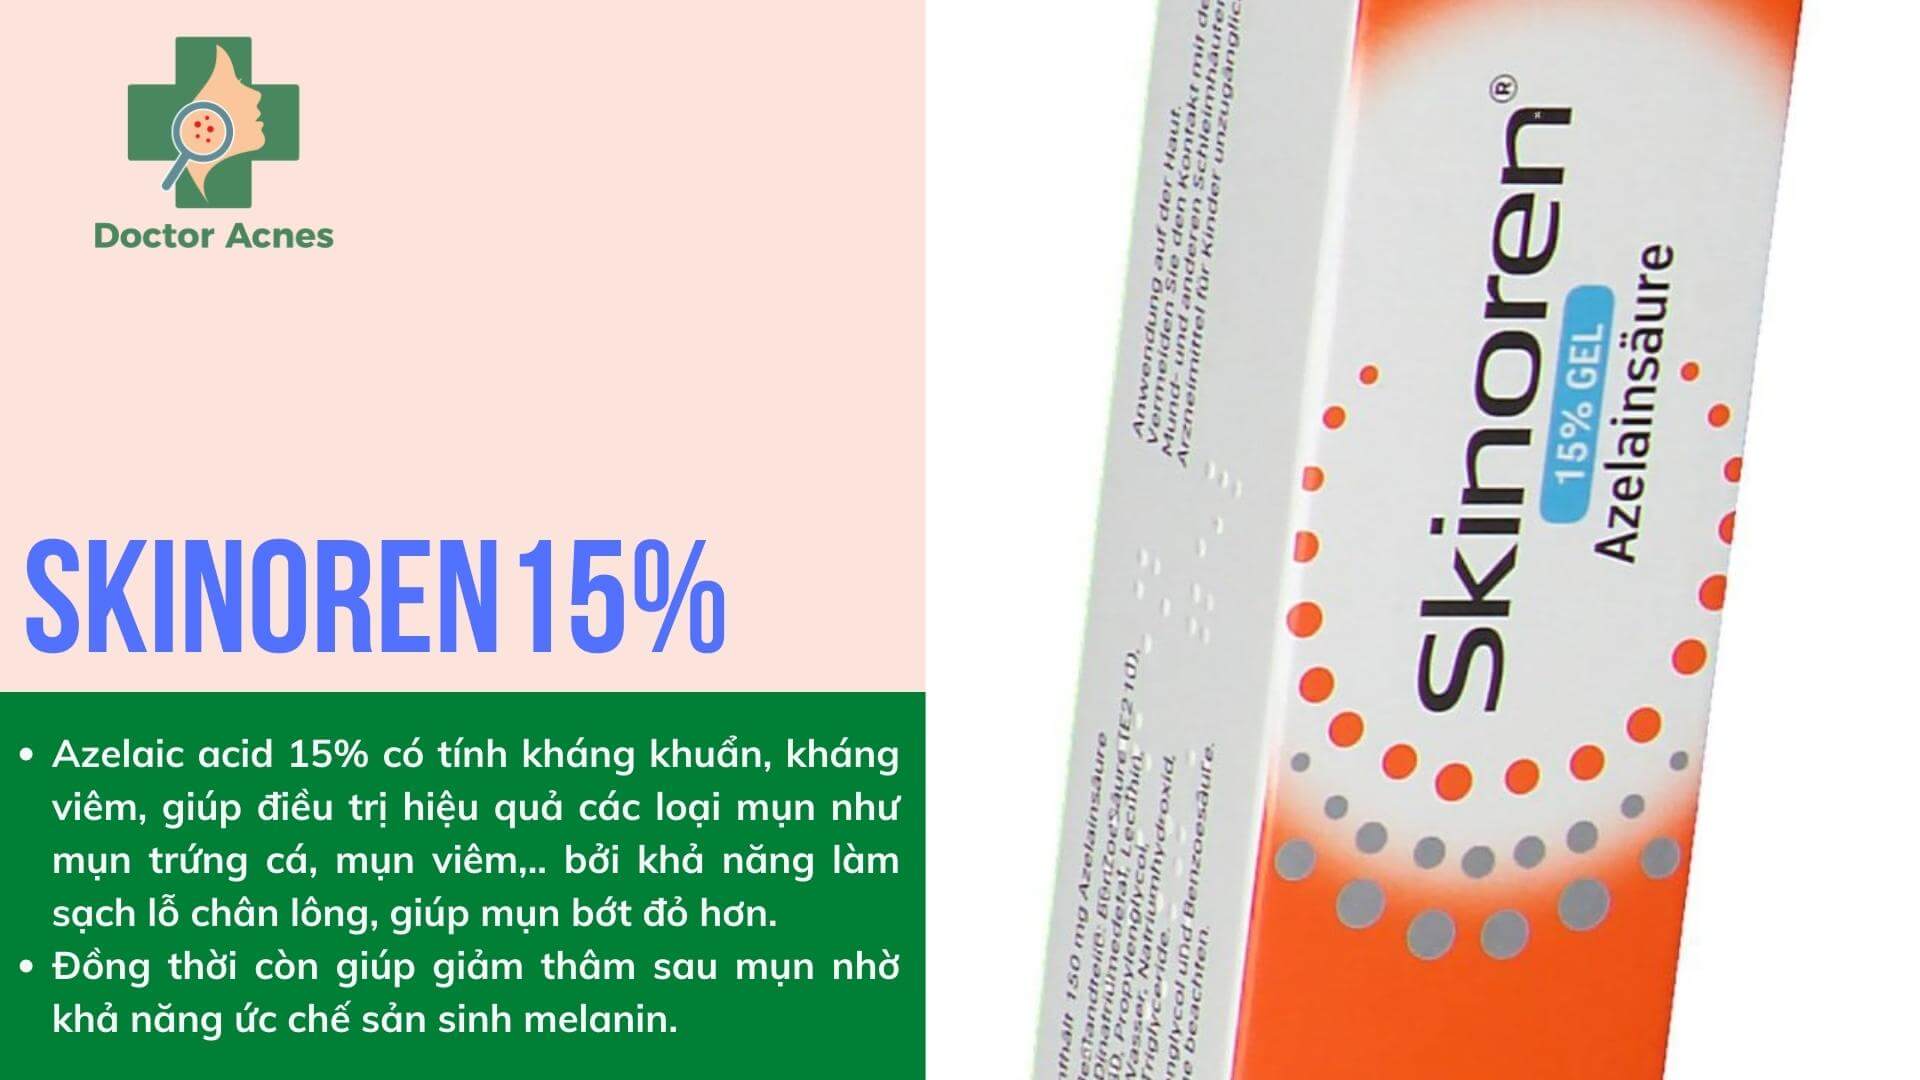 Skinoren gel 15% - Doctor Acnes